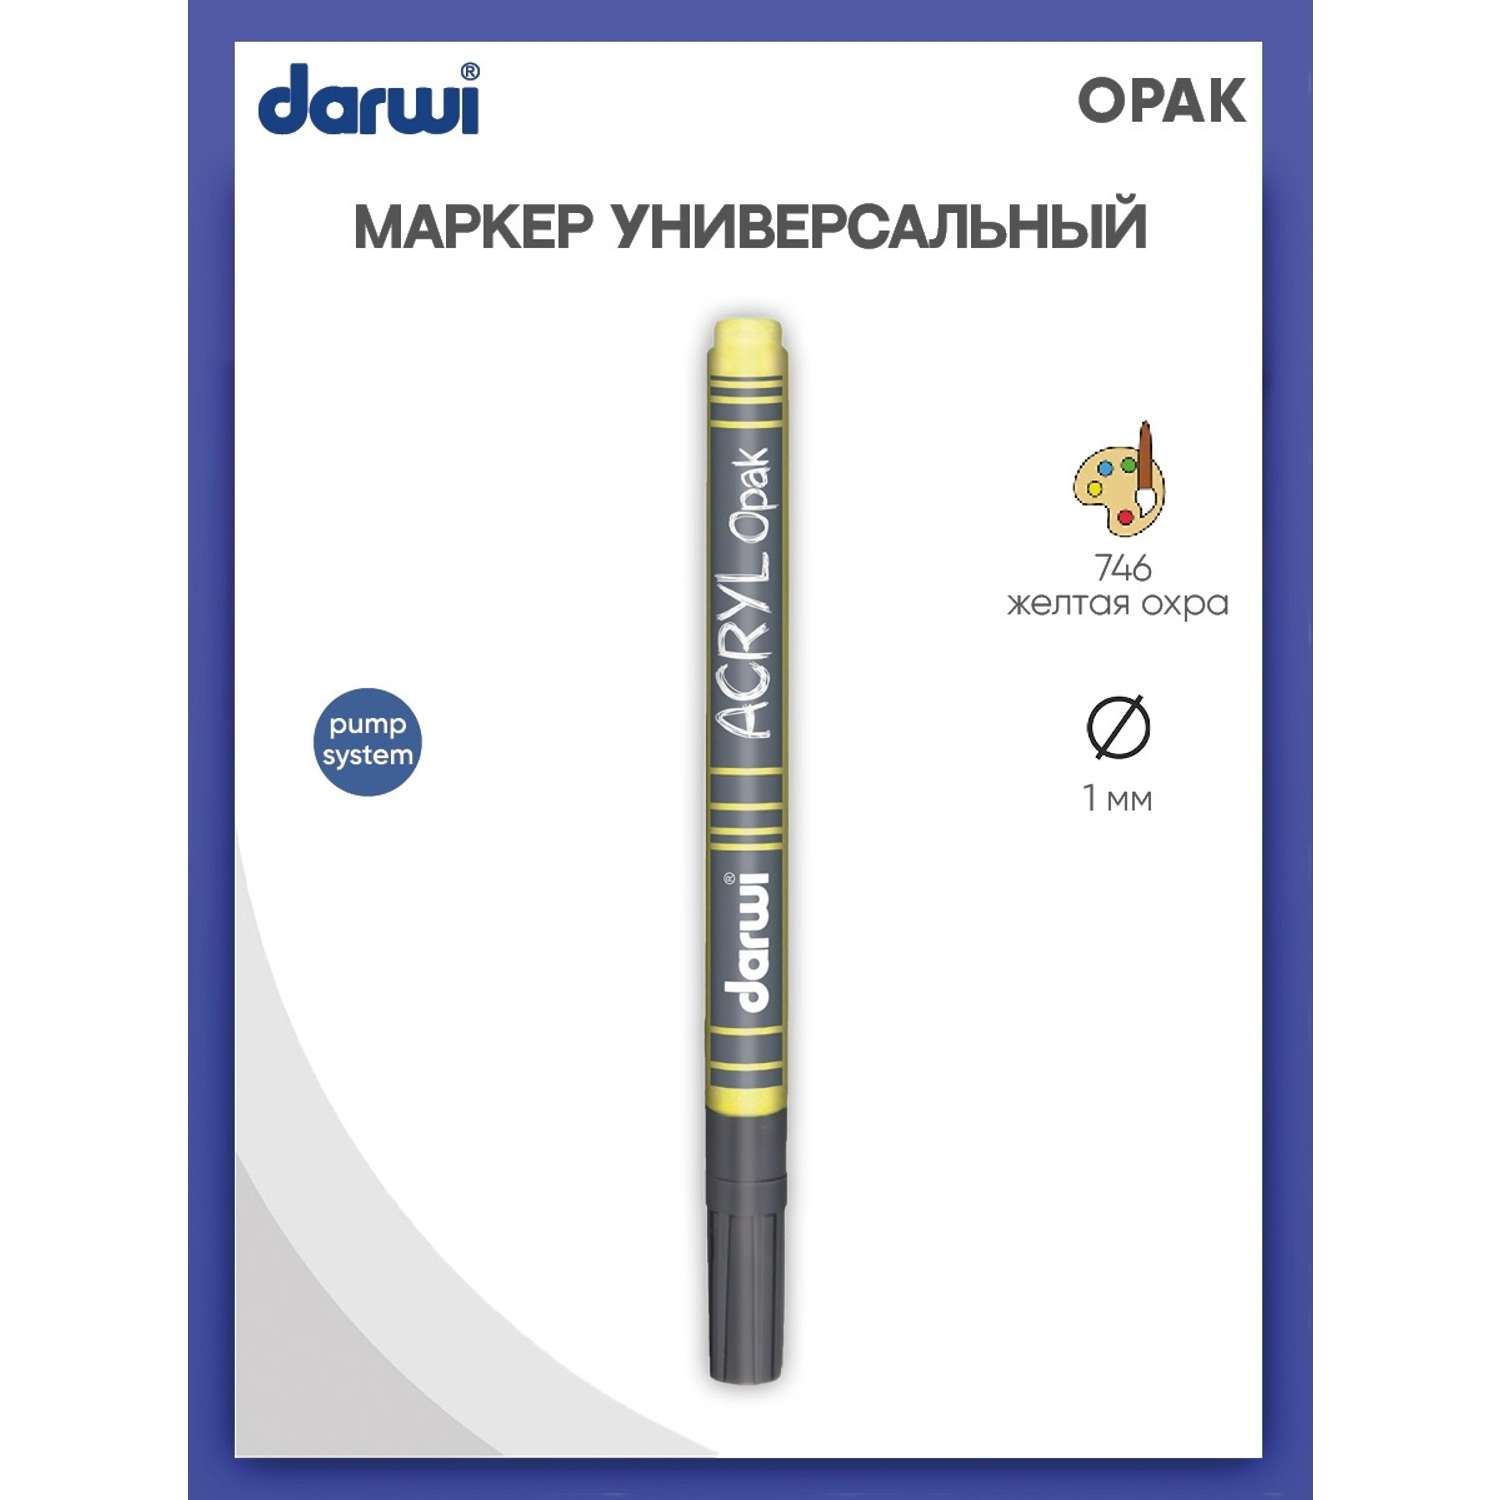 Маркер Darwi акриловый OPAK DA0220014 1 мм укрывистый 746 желтая охра - фото 1